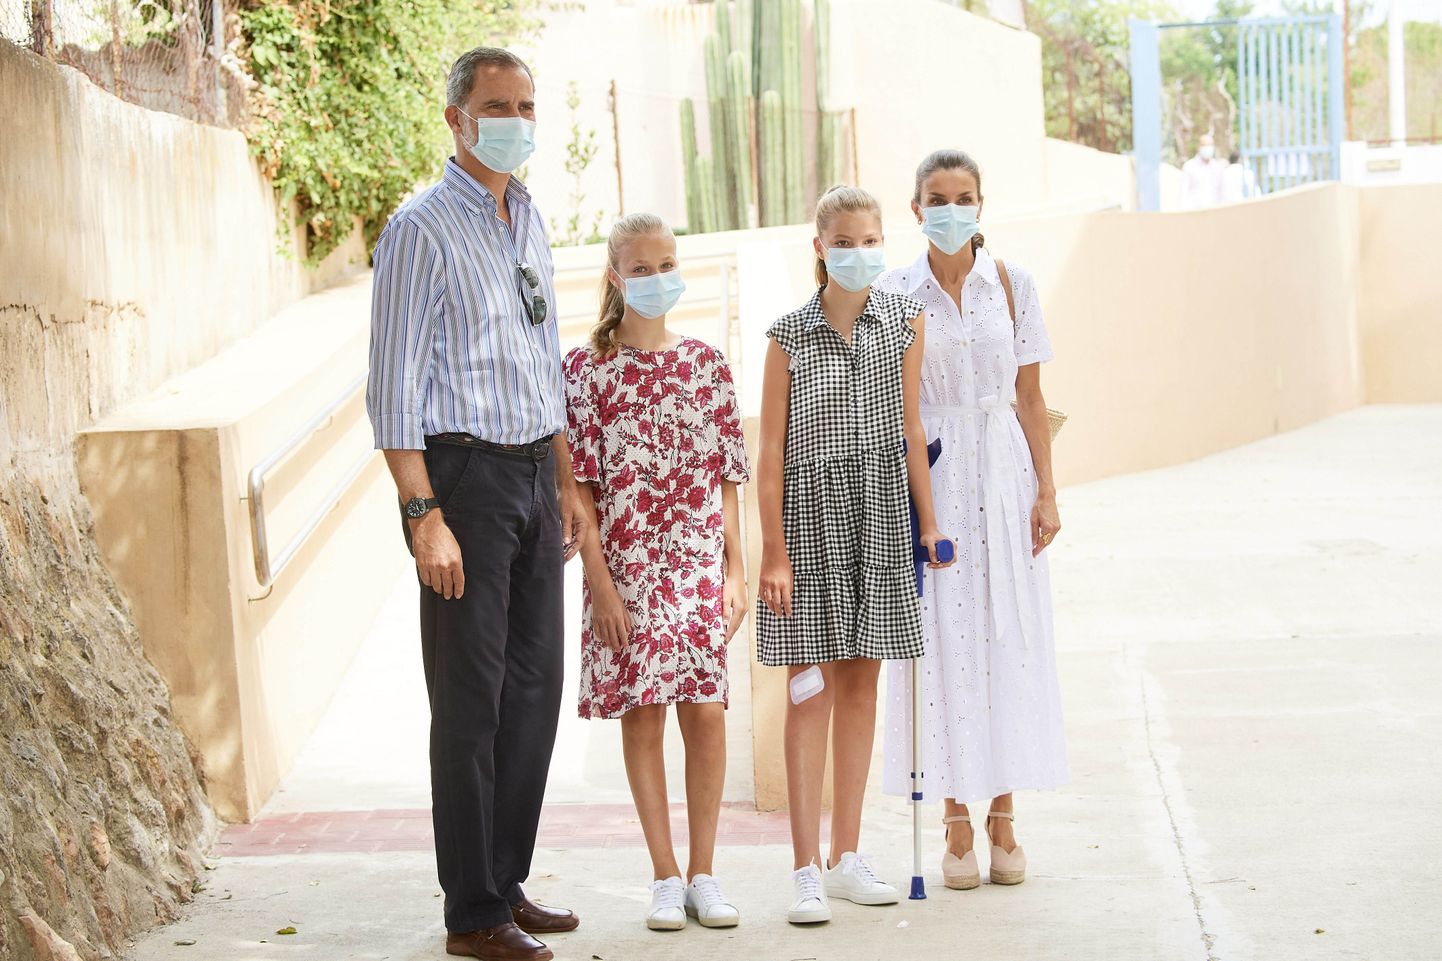  Spānijas karaļpāris ar meitām apmeklē Maljorku